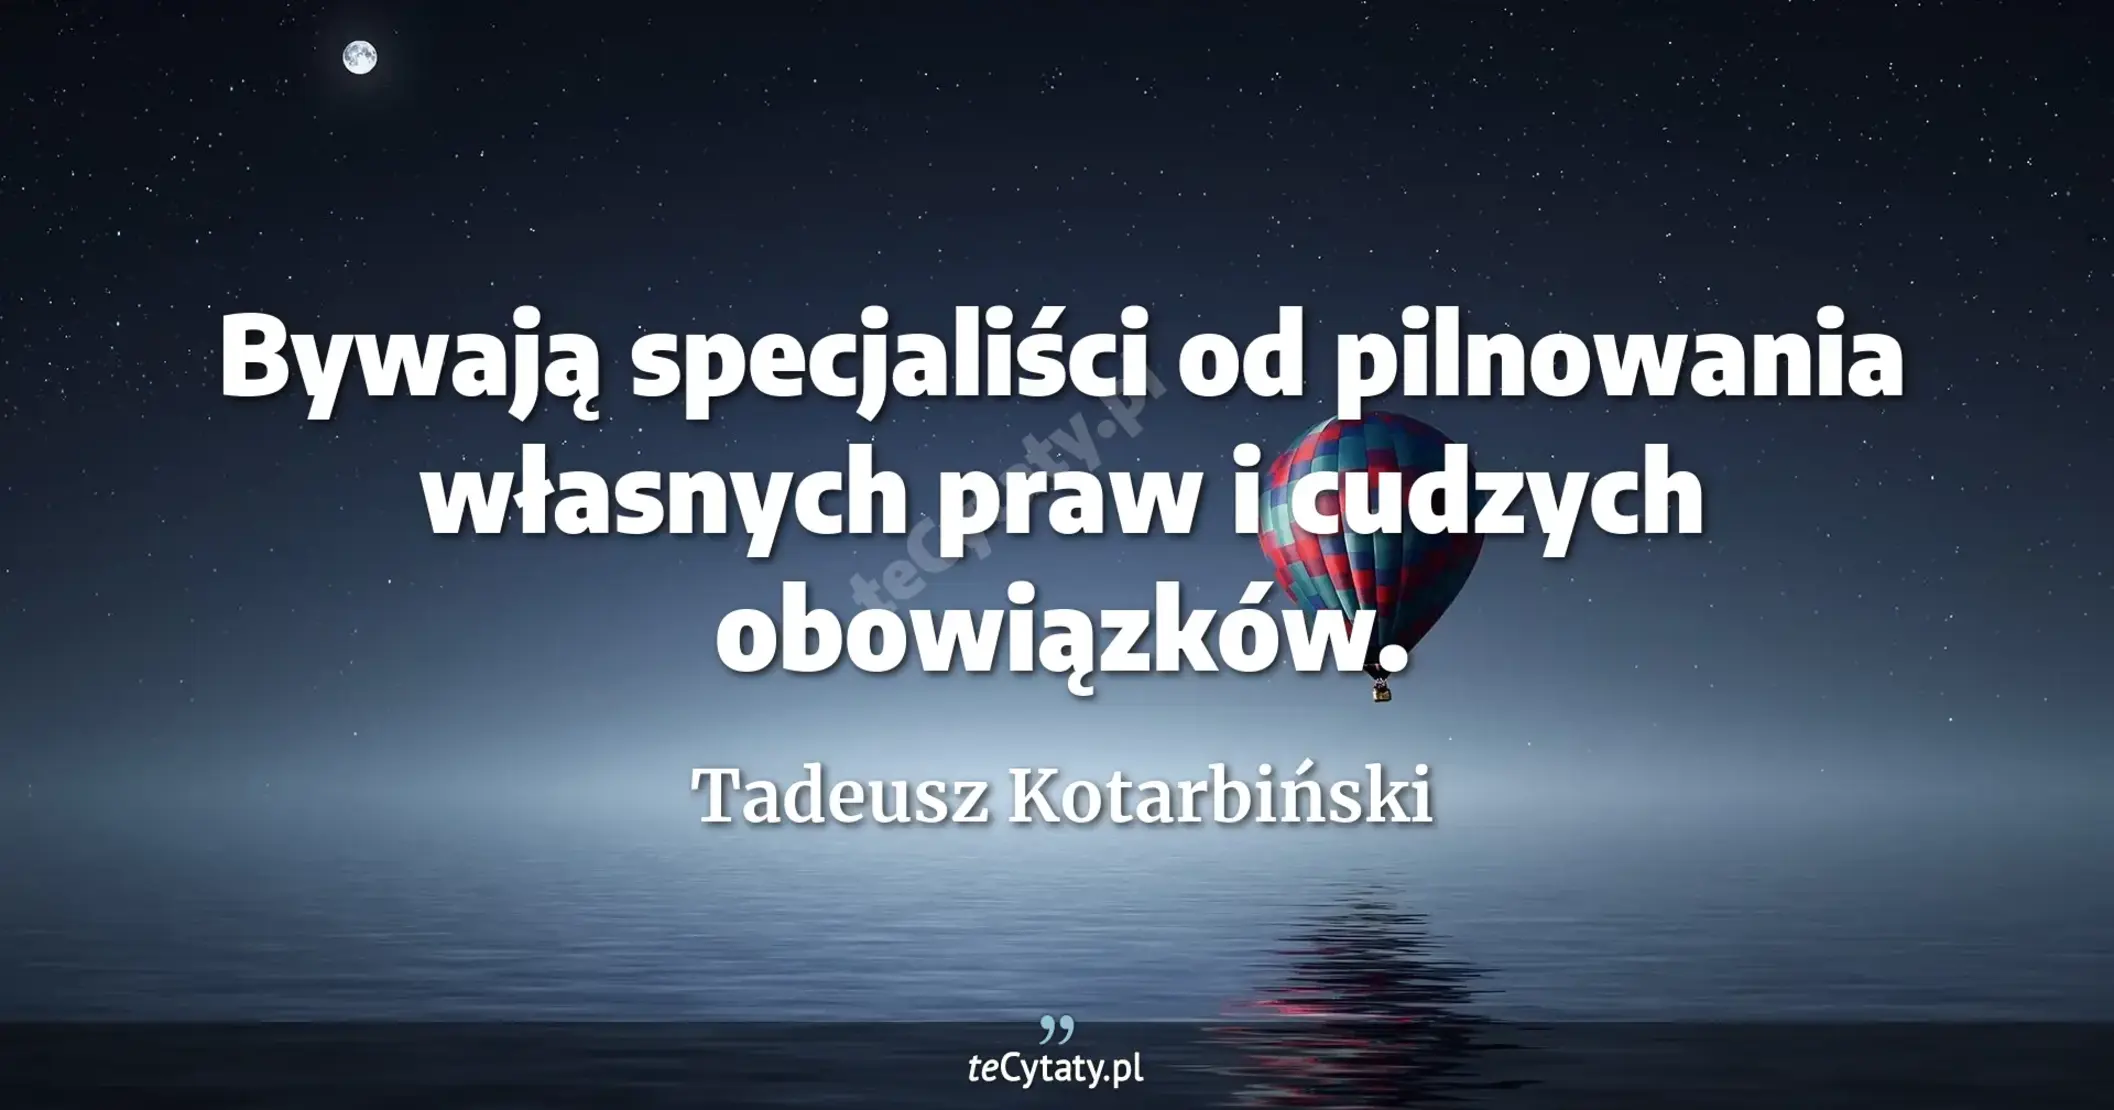 Bywają specjaliści od pilnowania własnych praw i cudzych obowiązków. - Tadeusz Kotarbiński